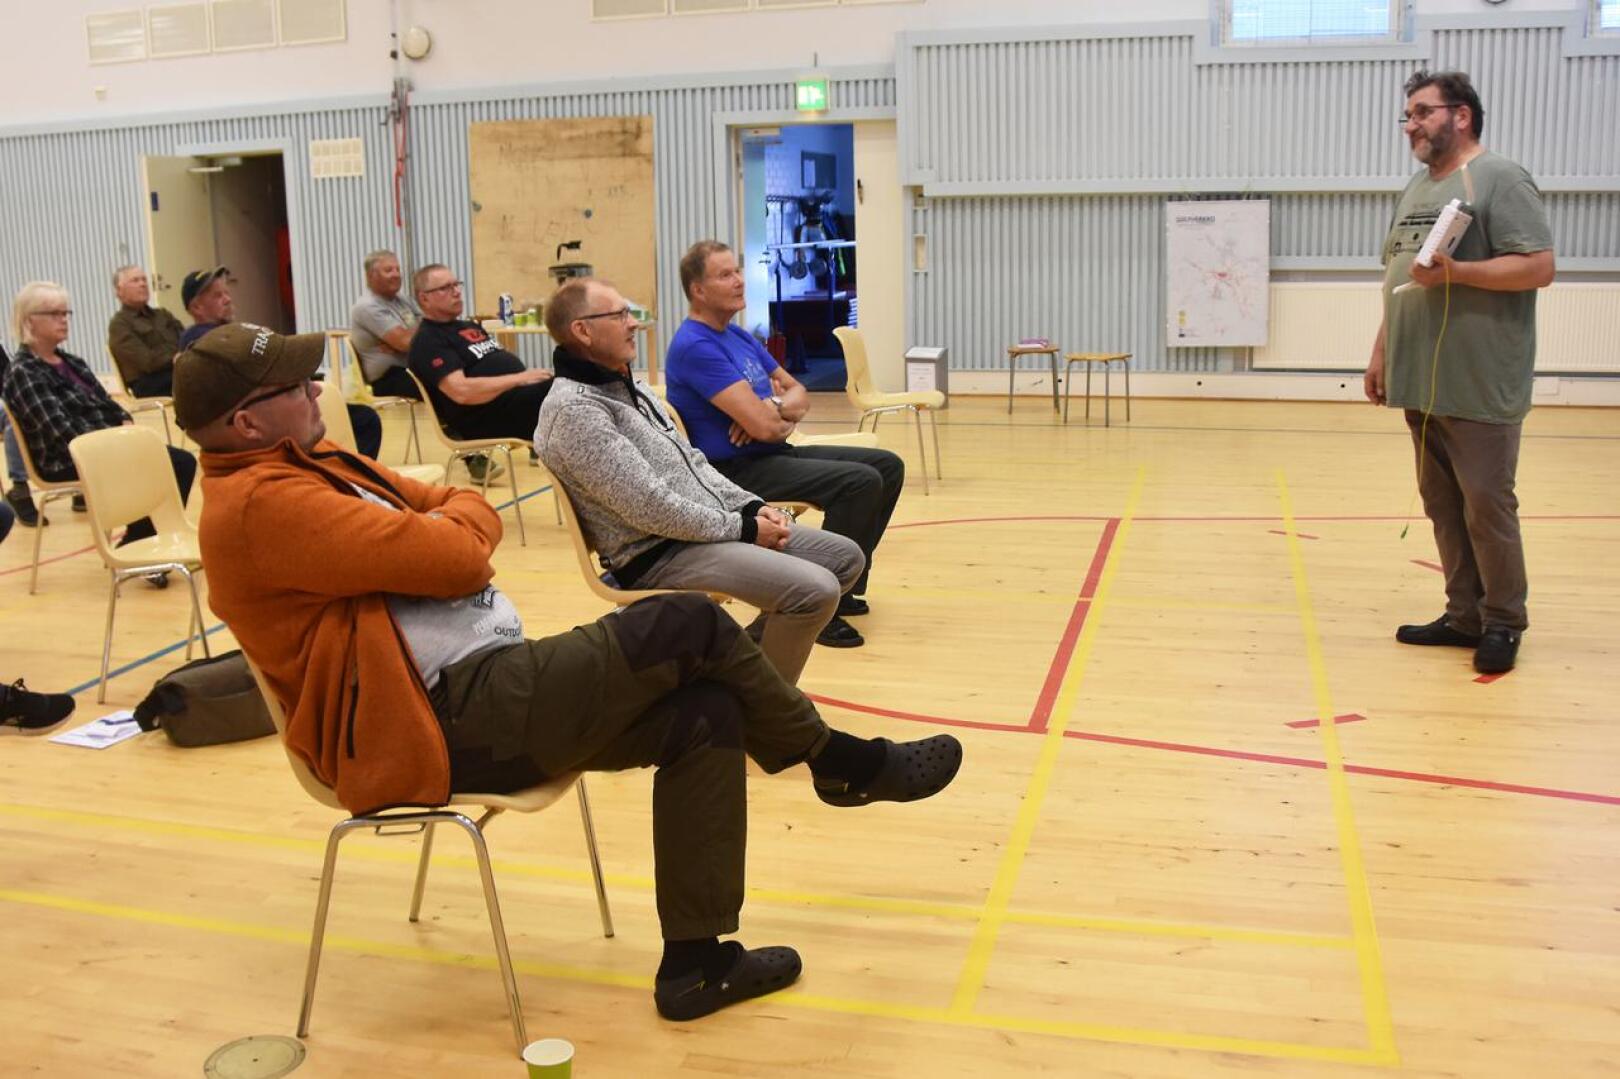 Siikaverkko-osuuskunta on esitellyt valokuituhanketta Haapaveden kylillä syksyn ajan. Nyt kiertue on lopuillaan ja kyläläisten toivotaan tekevän päätöksiä liittymien hankinnoista.